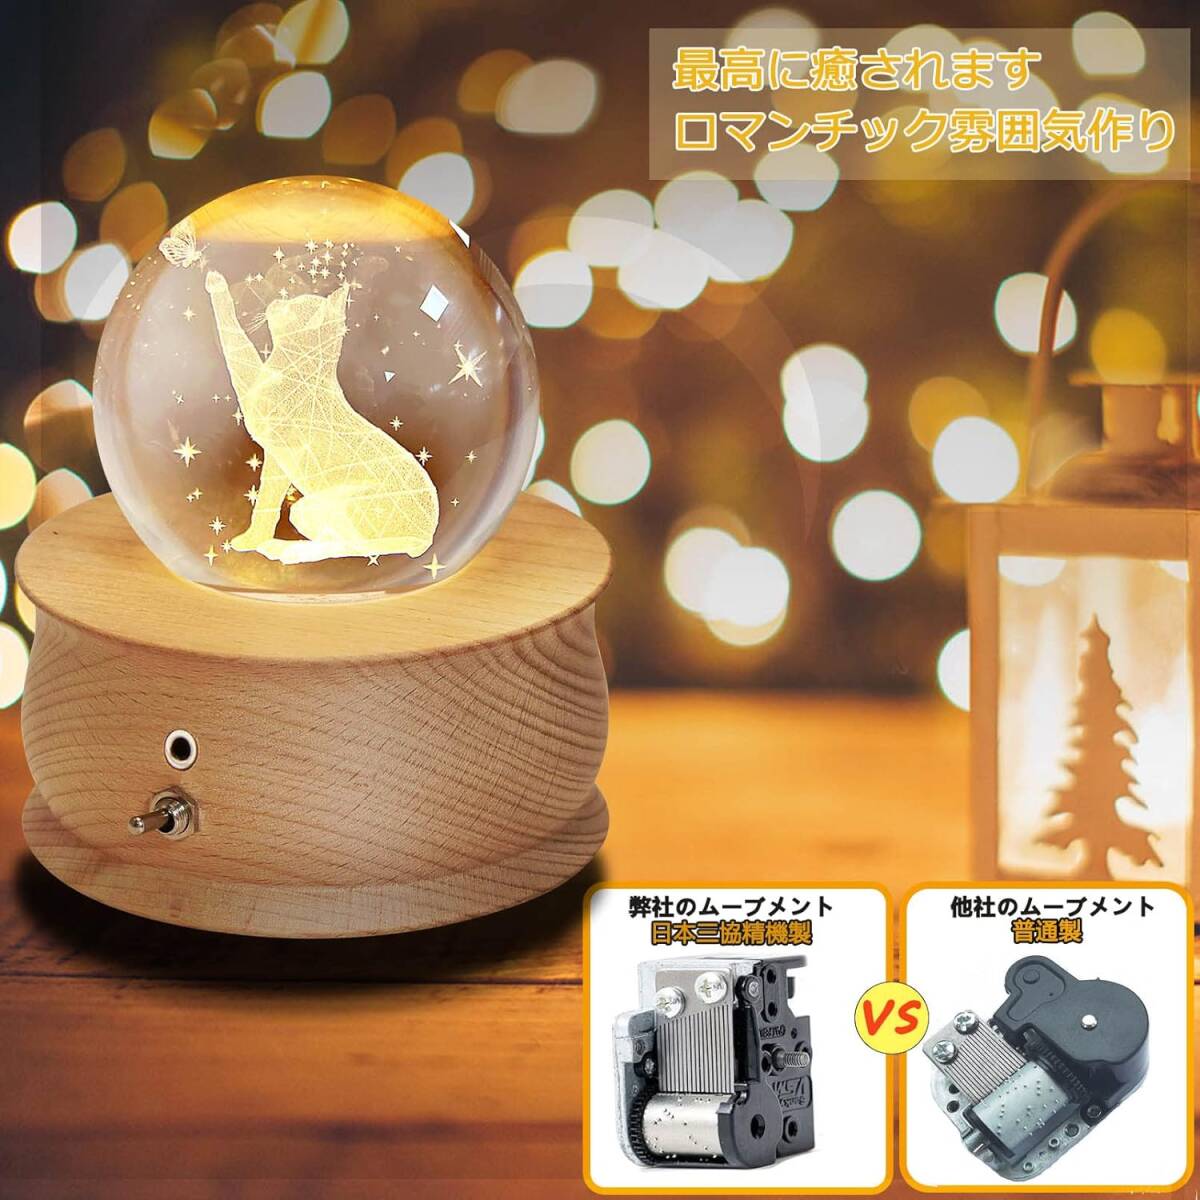 AY143 オルゴール クリスマス プレゼント スノードーム クリスタル ボール 猫 バタフライ 月のランプ LEDライト 1200mAhバッテリー_画像8